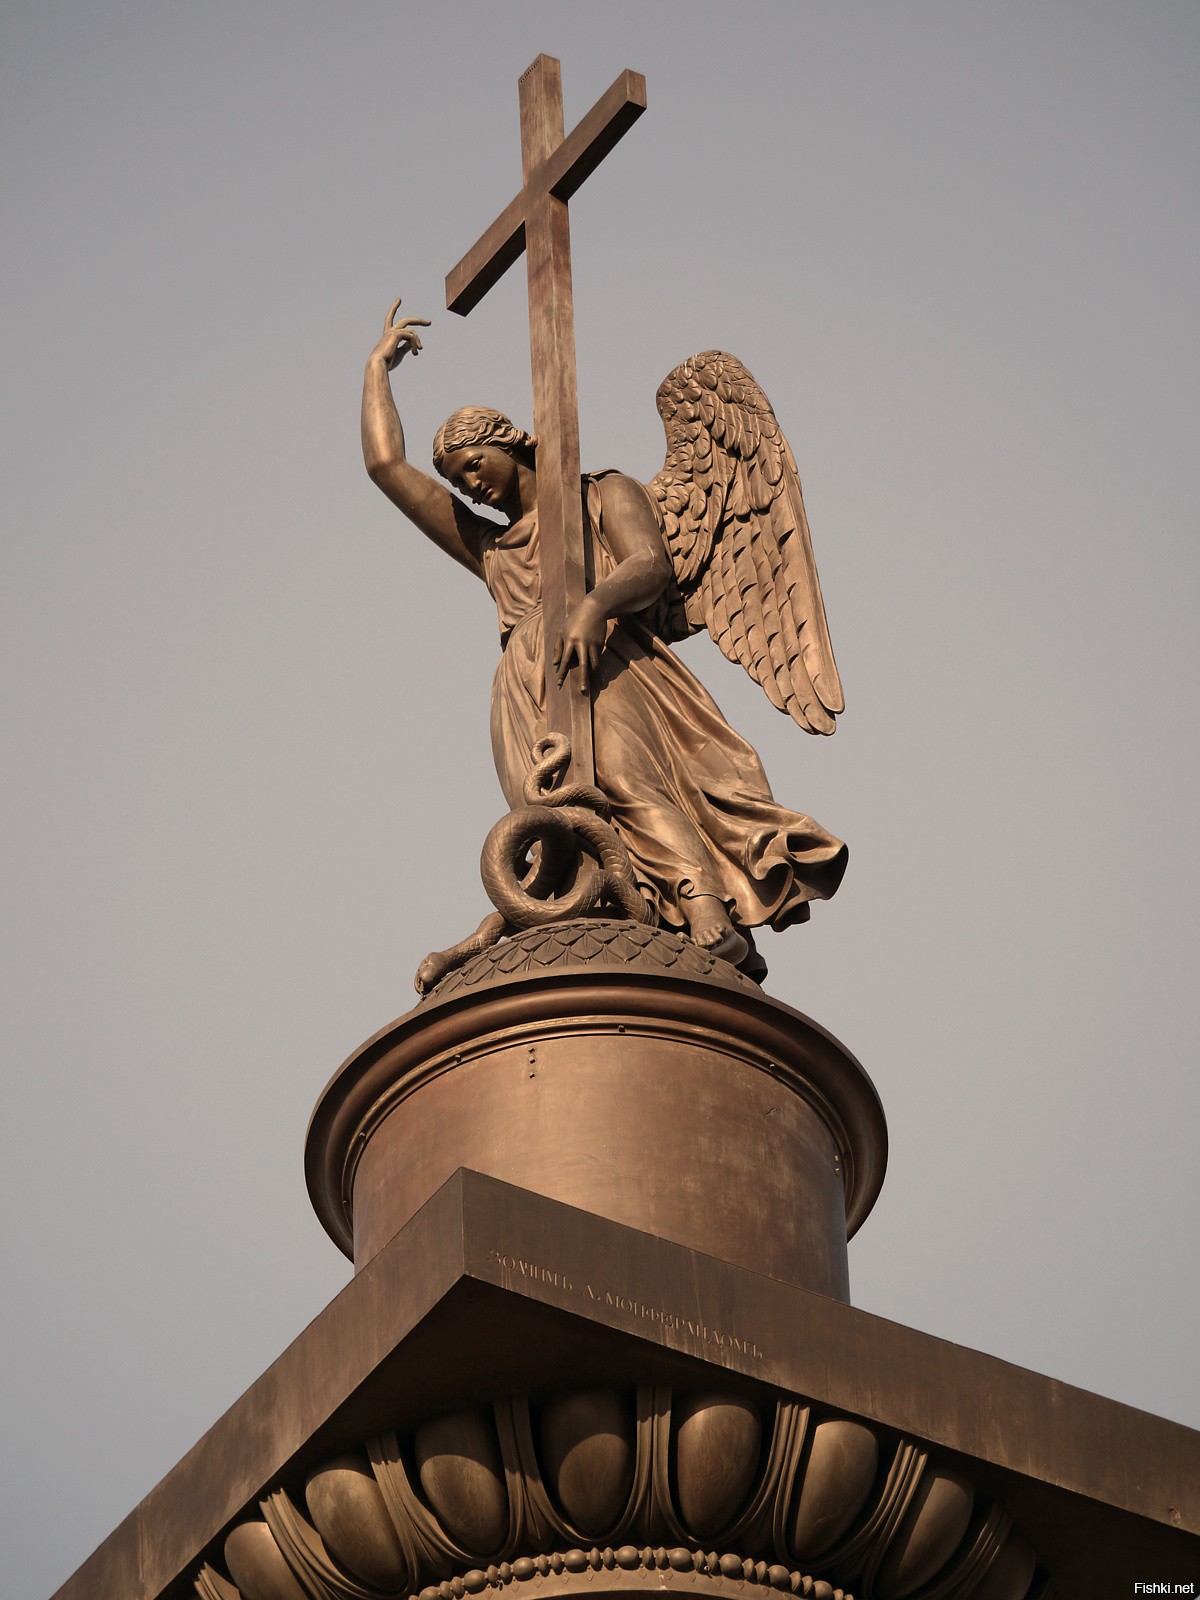 ангел на дворцовой площади в санкт петербурге